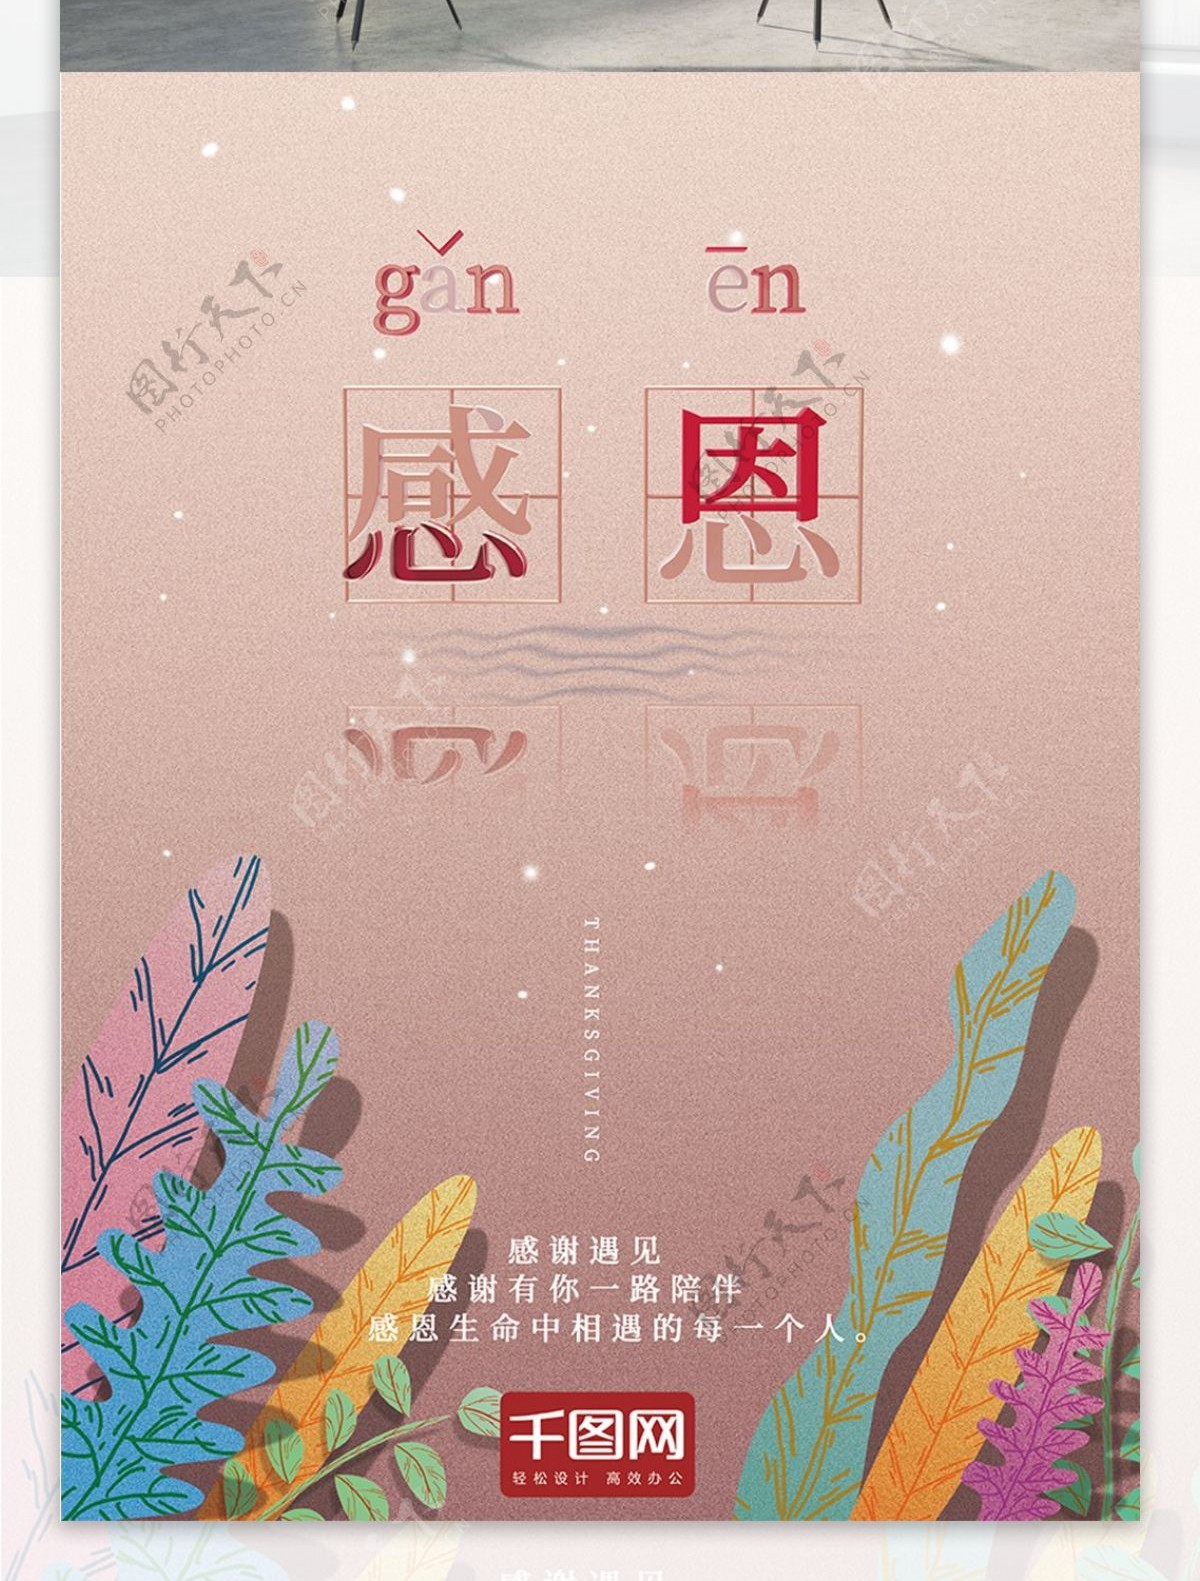 手绘c4d小清新感恩节节日海报